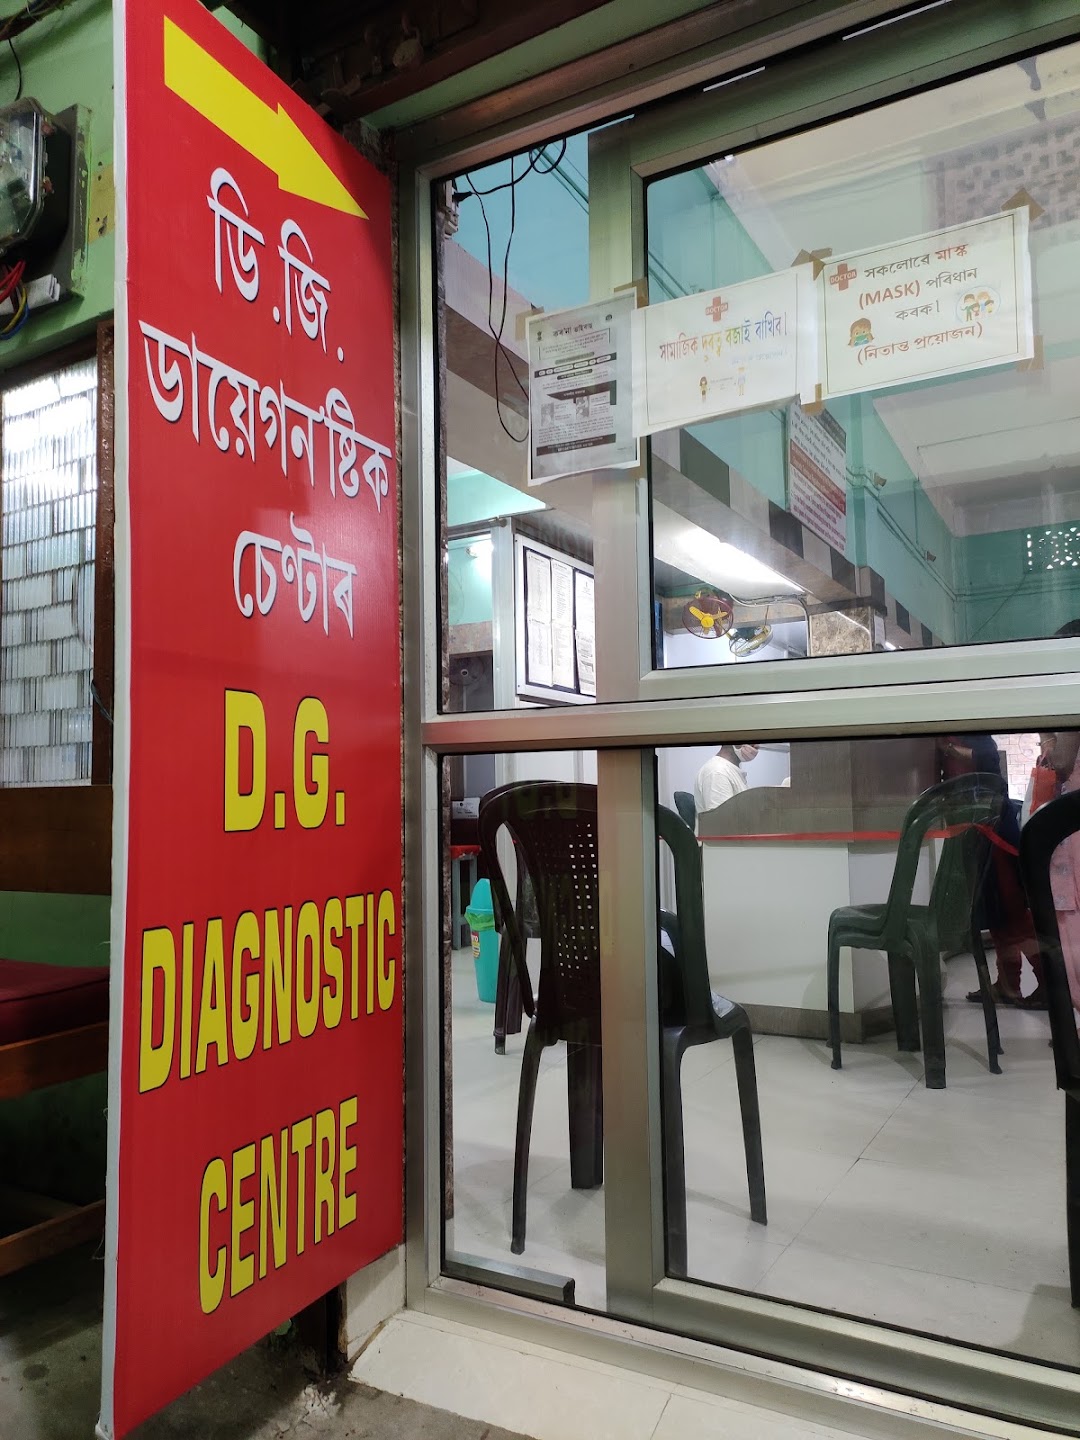 D G Diagnostic Center